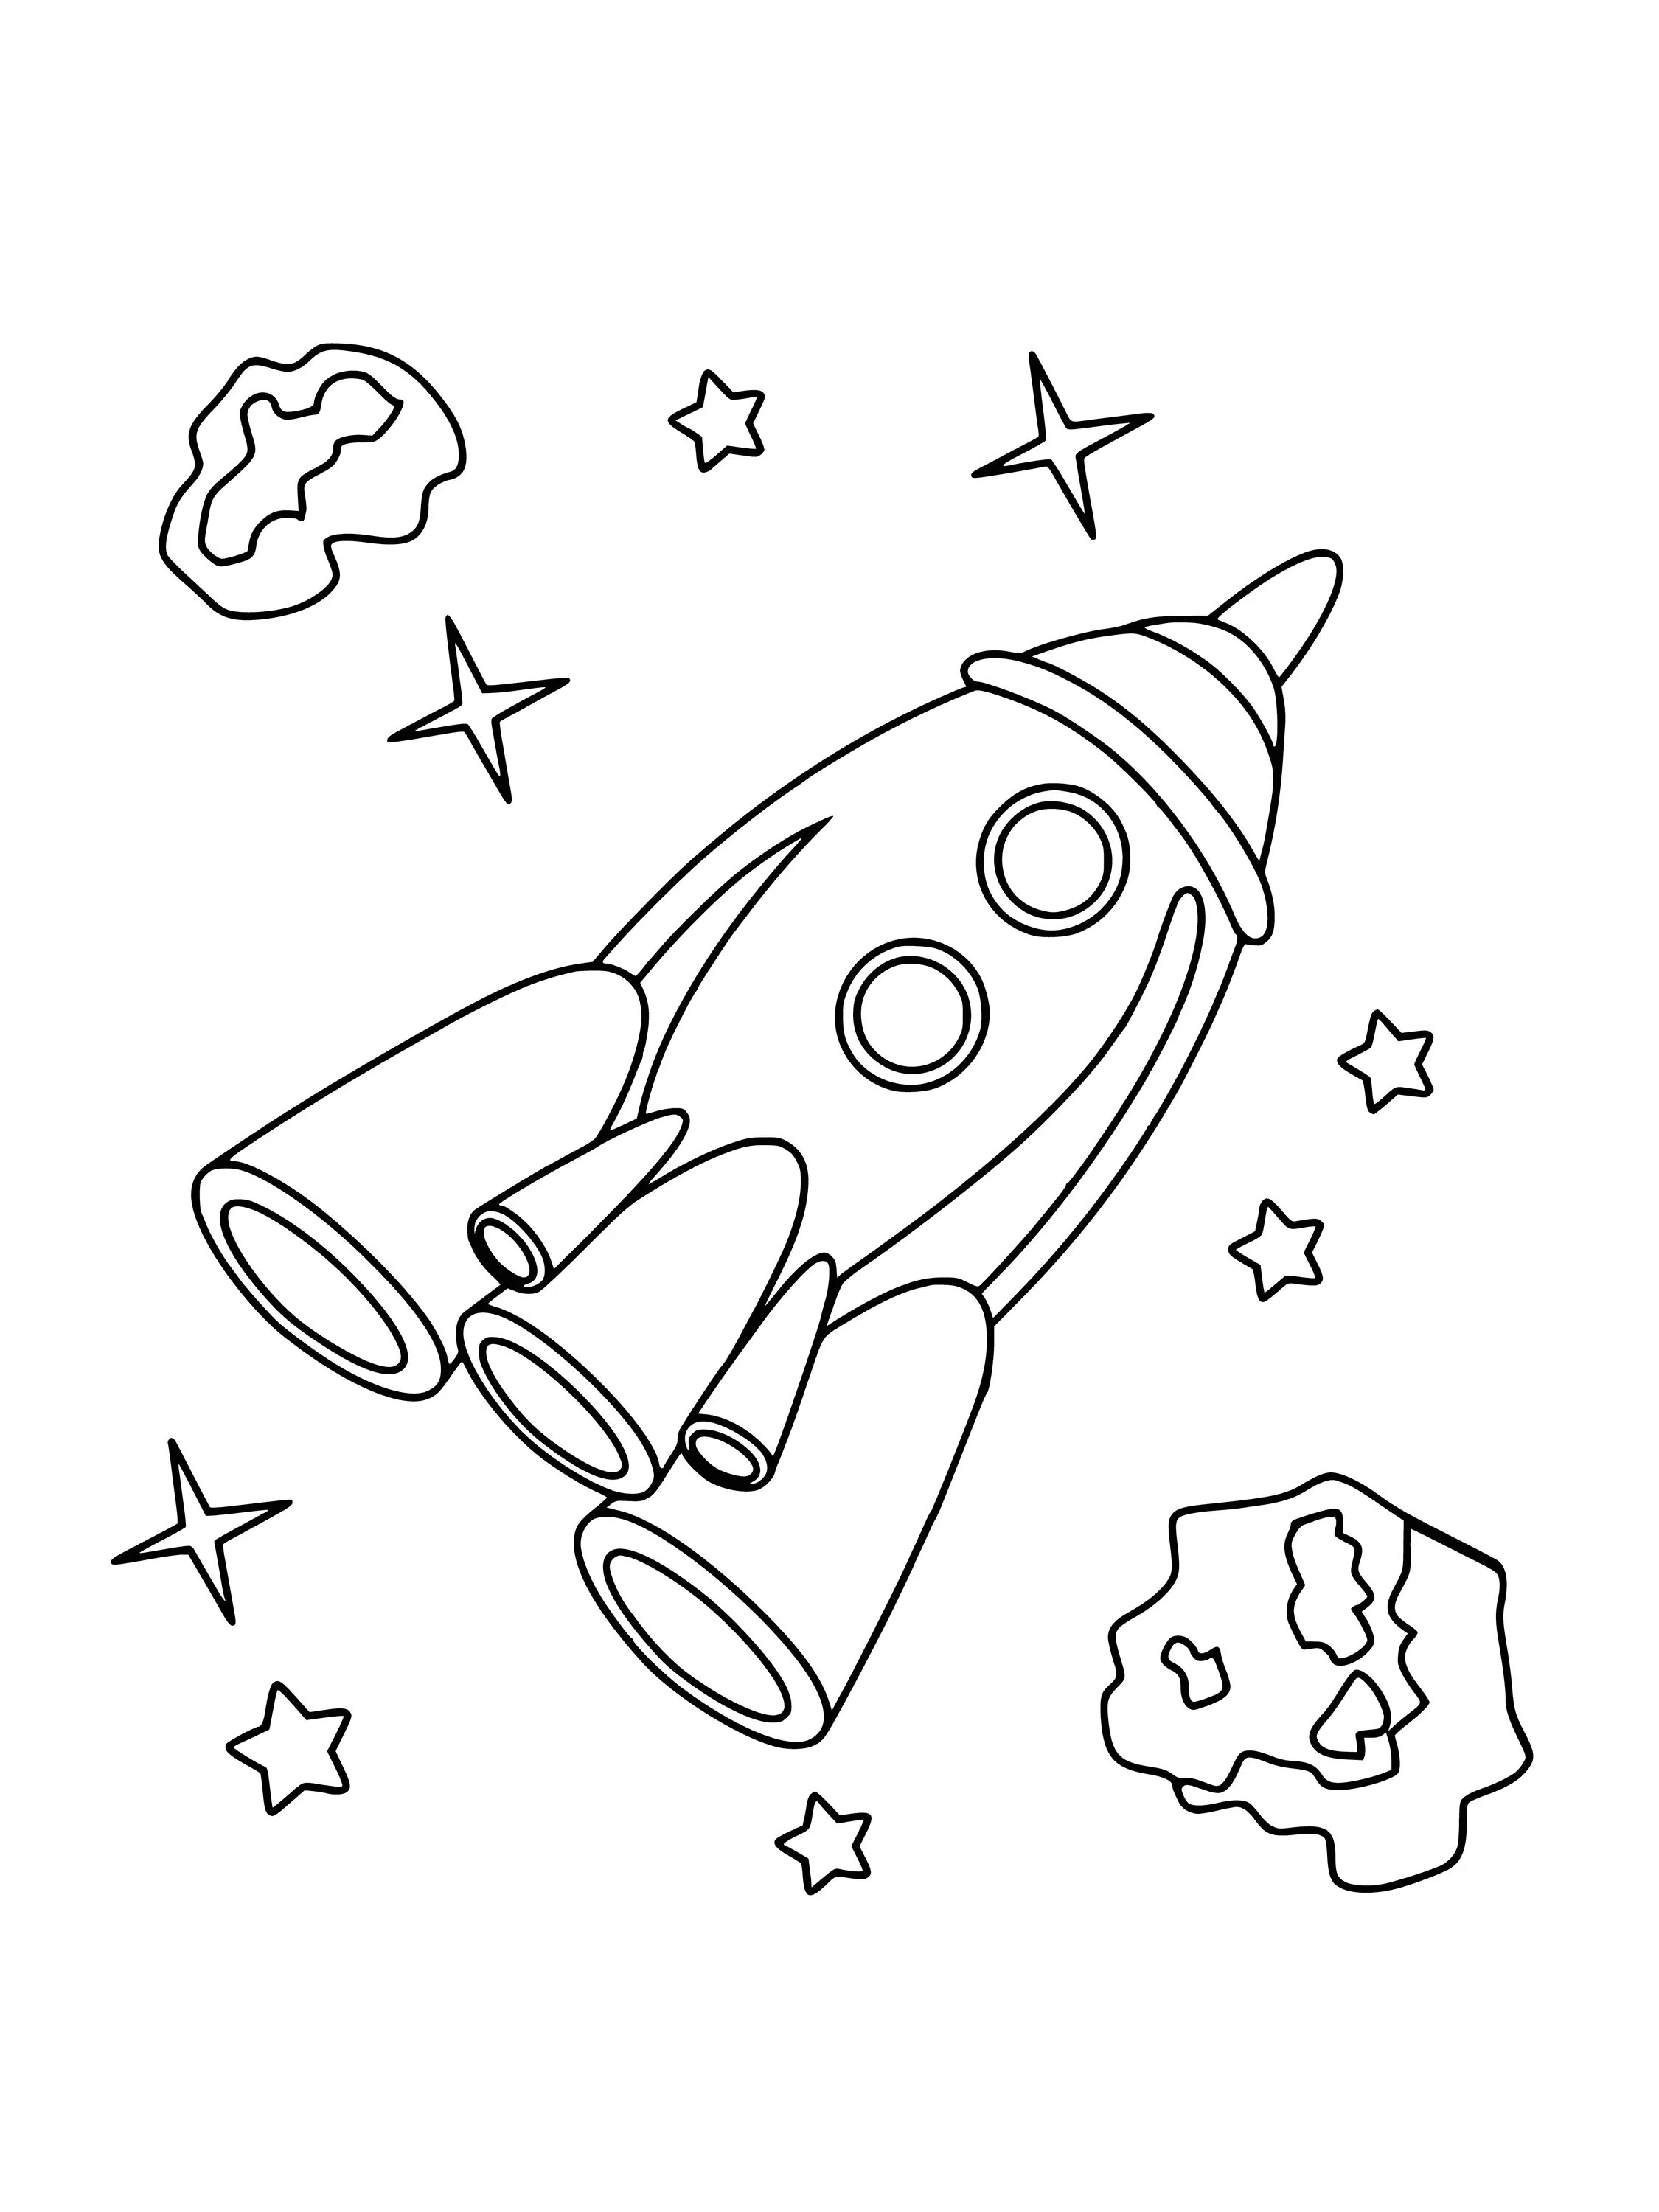 Ракета раскраска. Космос раскраска для детей. Ракета раскраска для детей. Раскраска для мальчиков ракета. Ракета раскраска для малышей